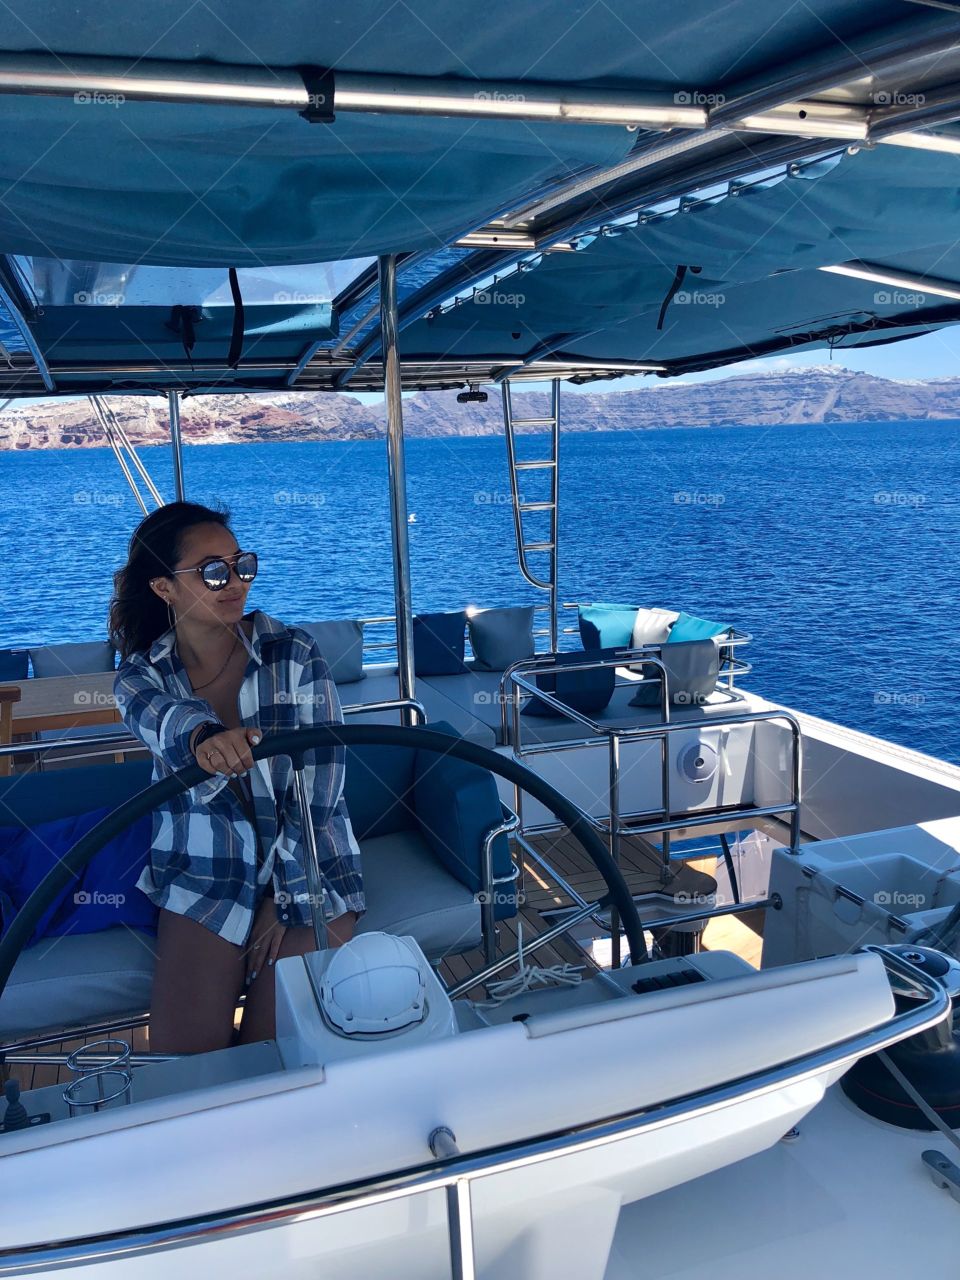 Fun & scenic catamaran cruise in Santorini, Greece